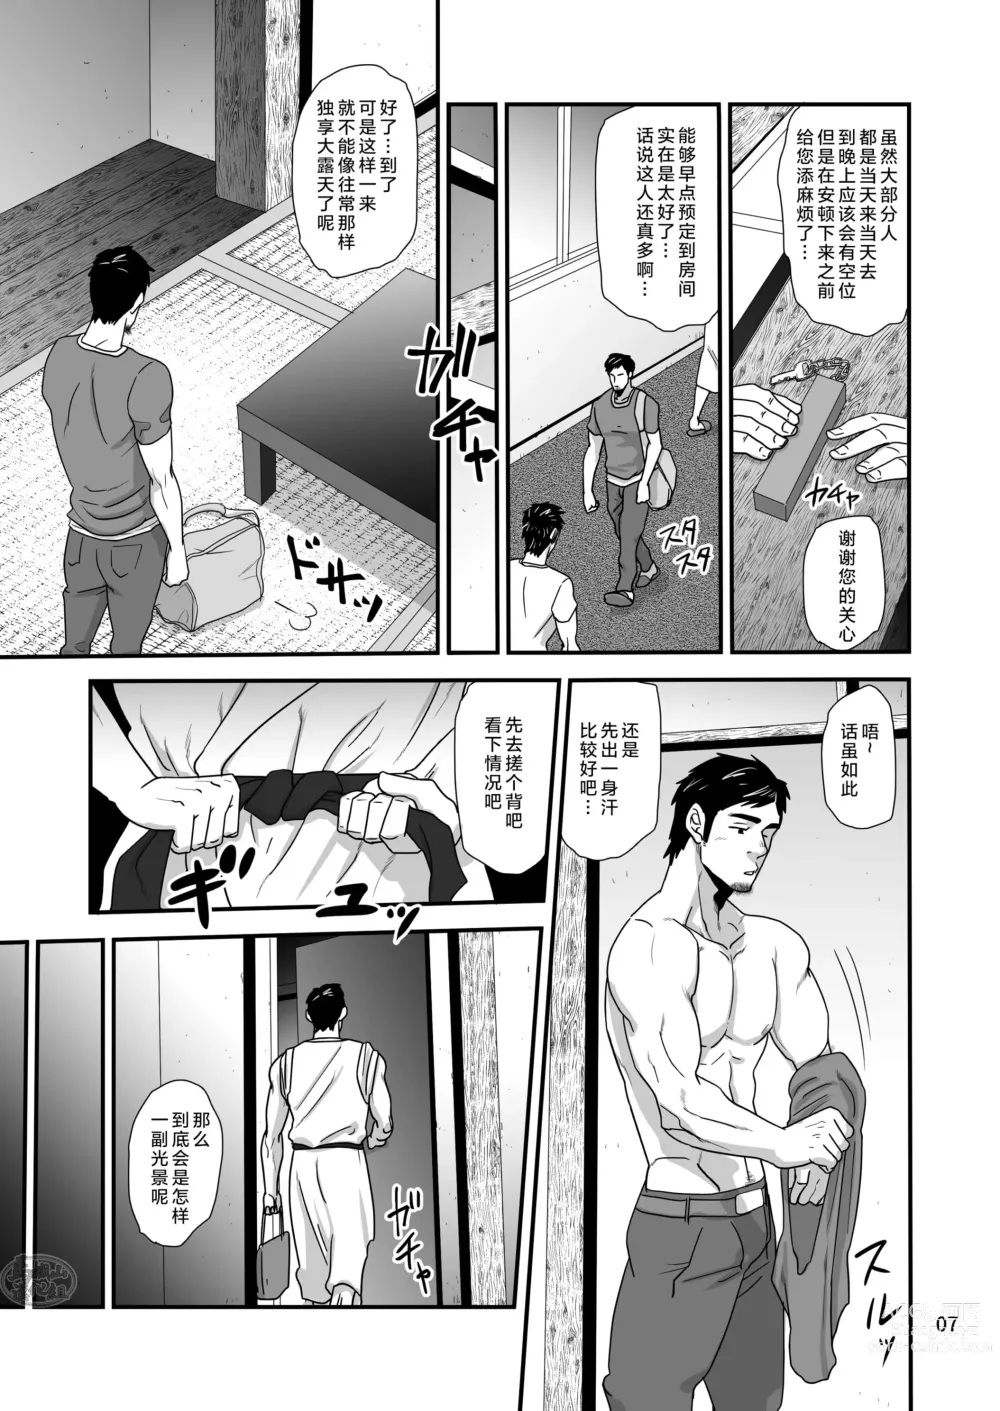 Page 7 of manga 松武互悦同衆!!_旅の恥はヌキすて